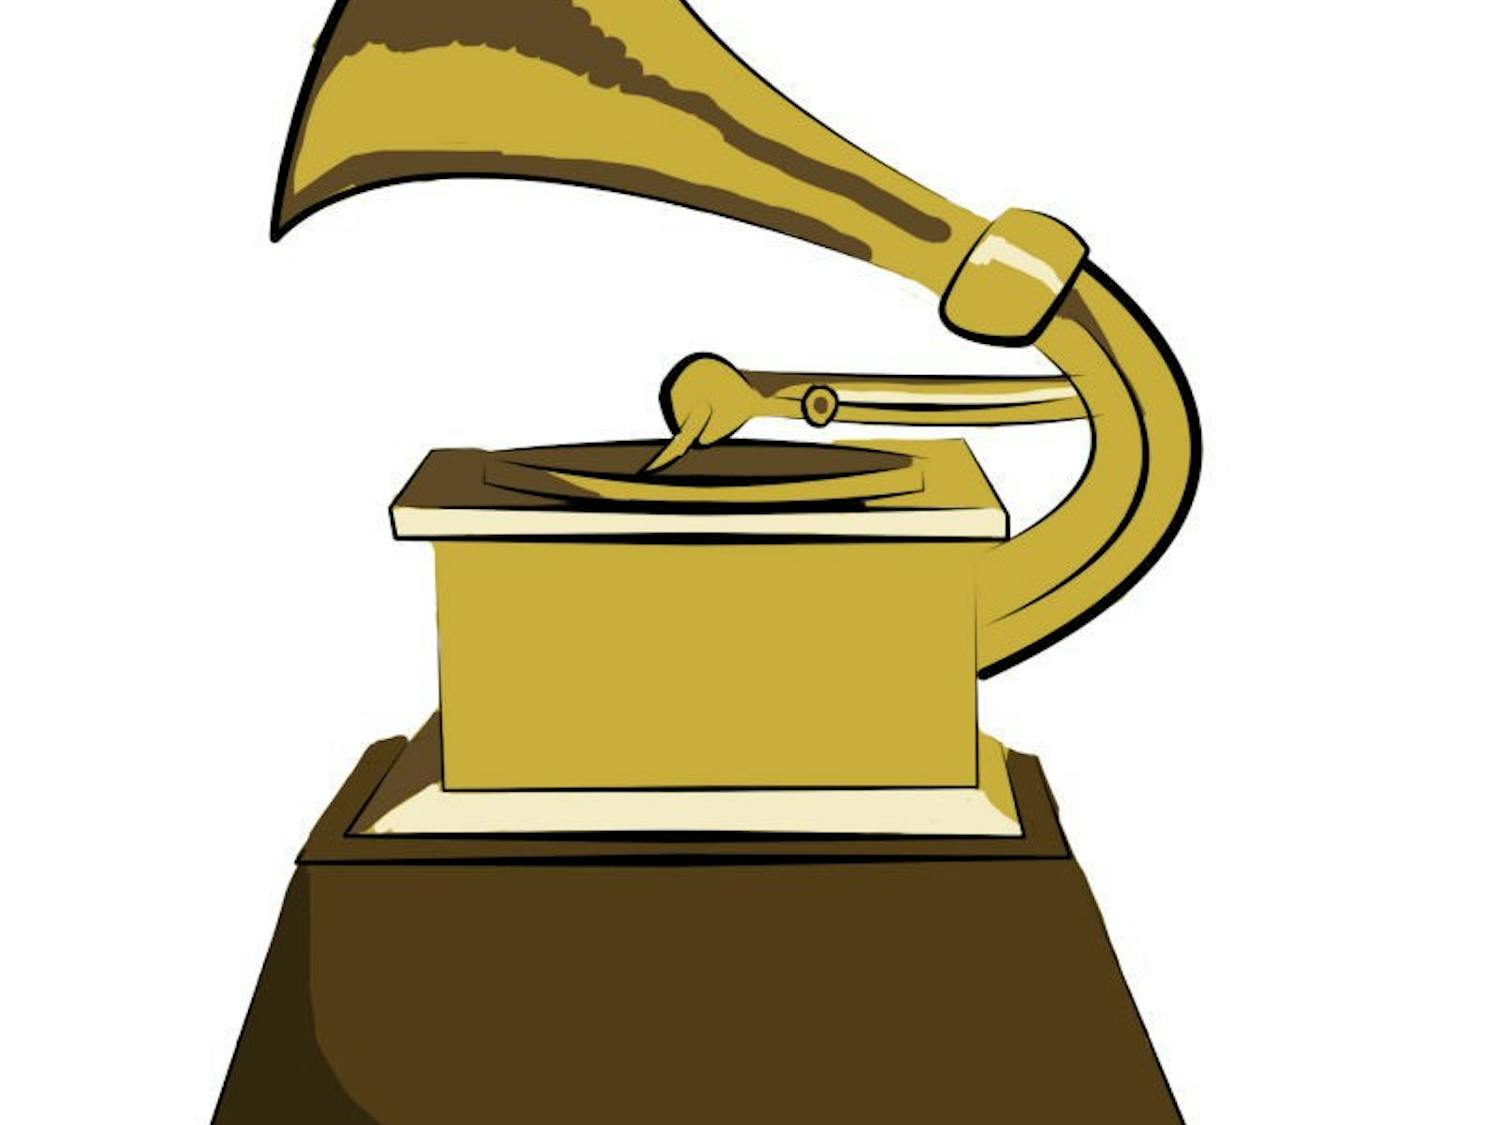 Grammys 2013